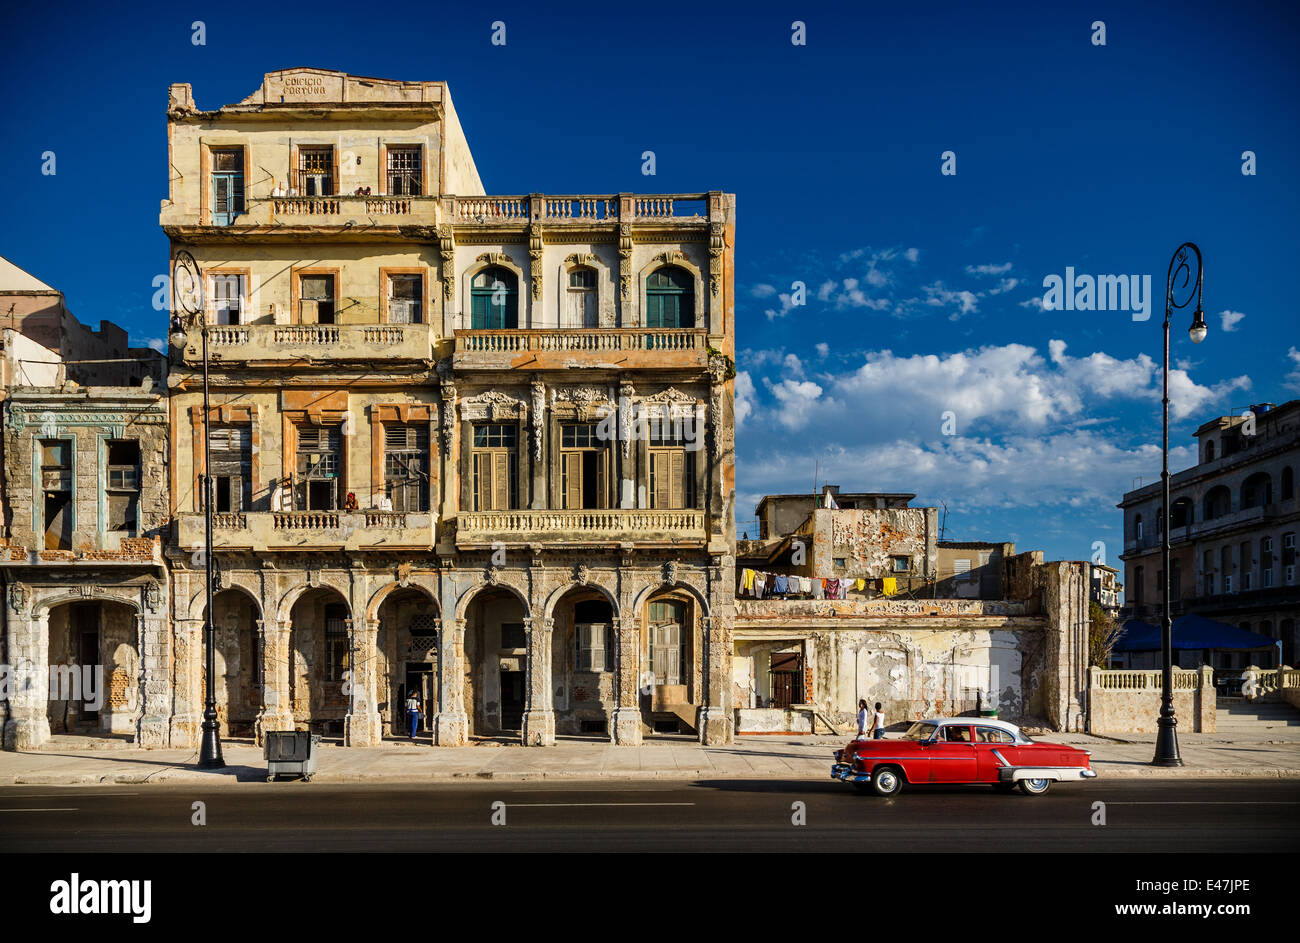 Havana, Cuba Stock Photo